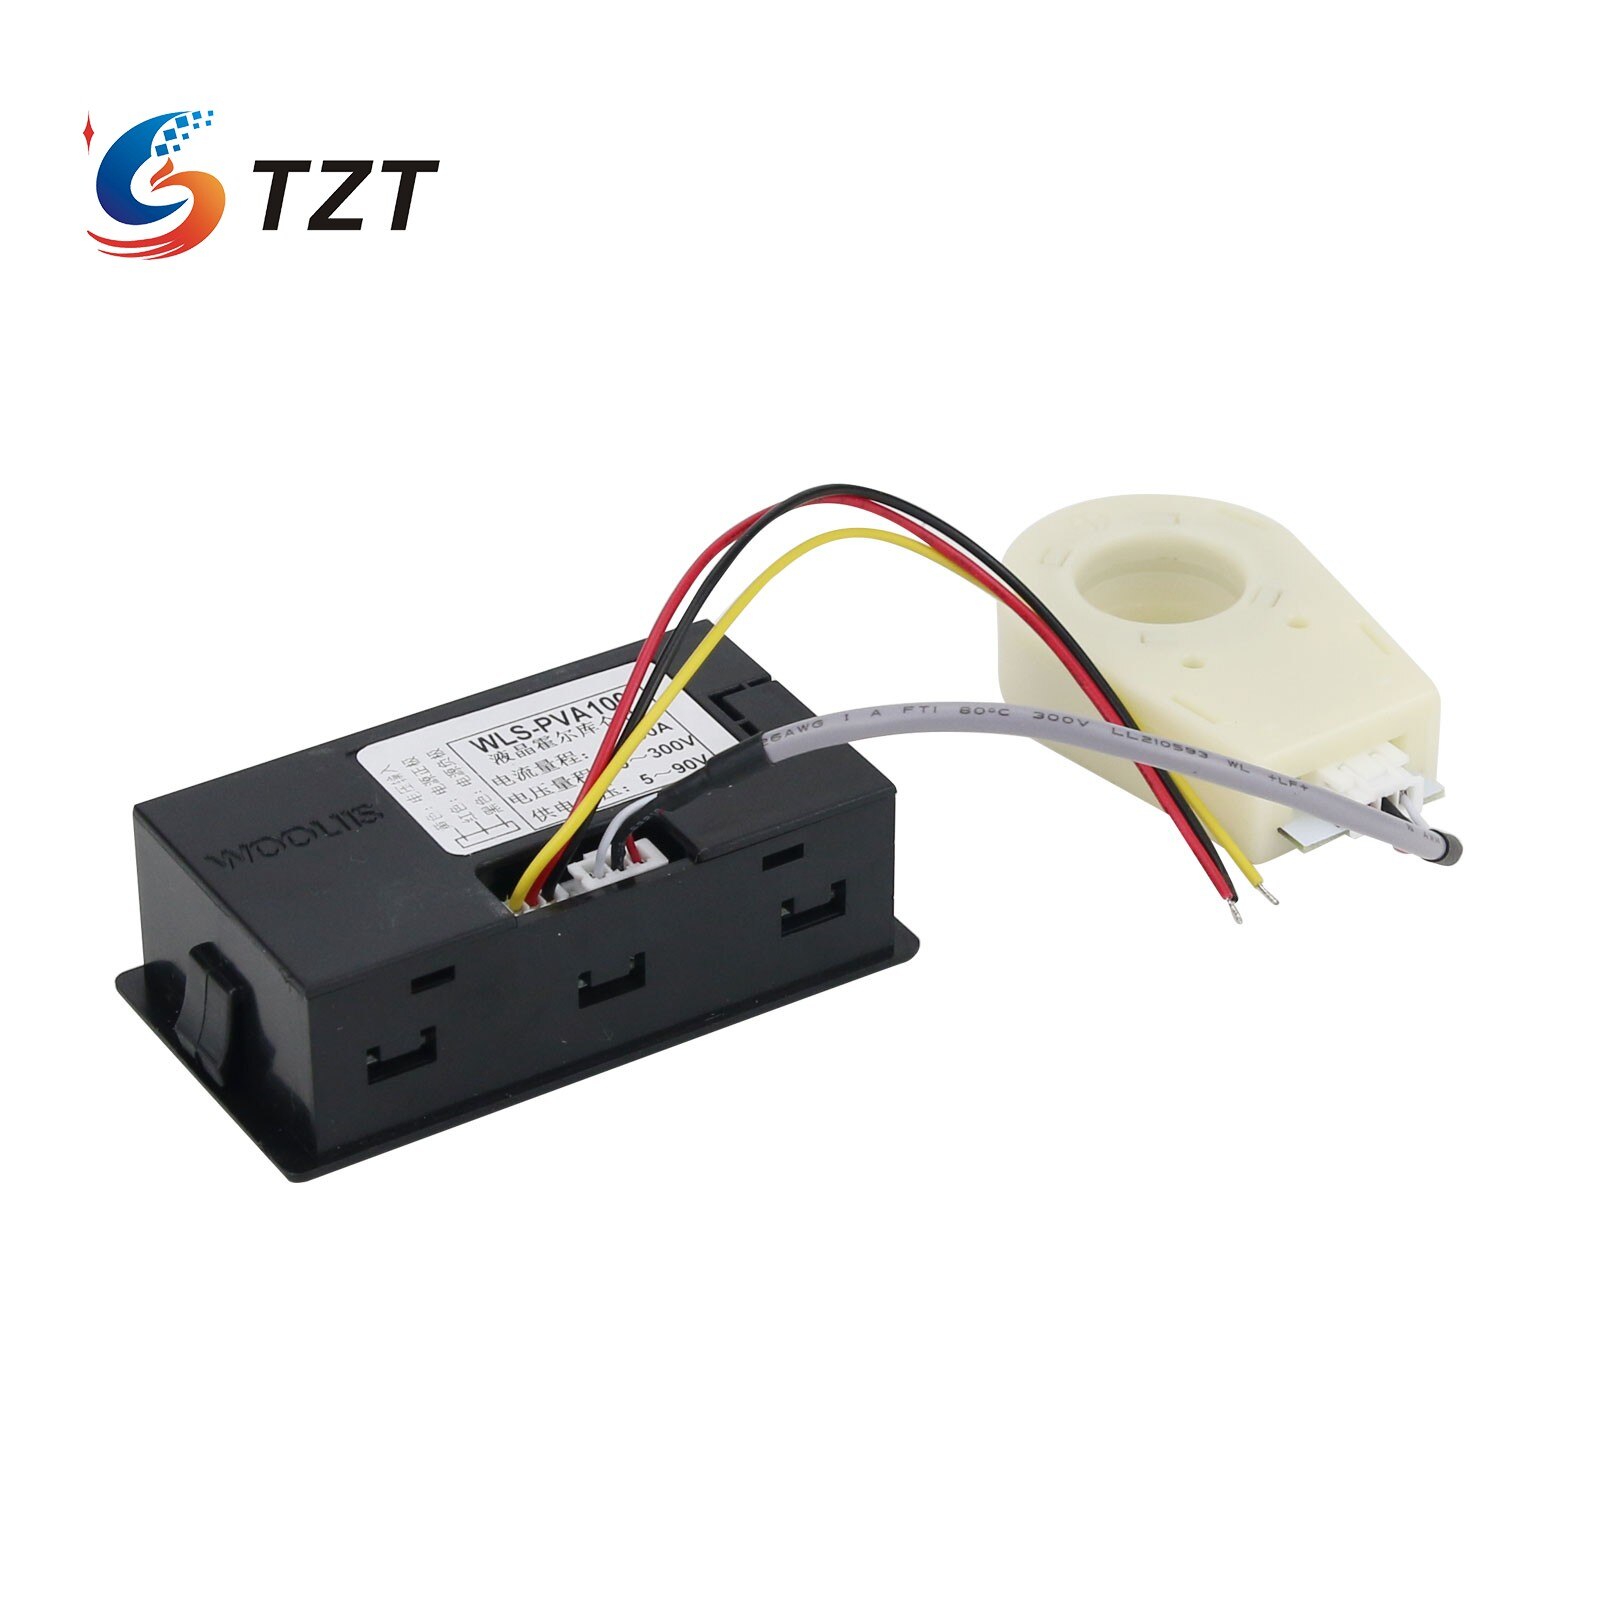 Tzt  dc 0-300v batteri monitor meter kapacitet spænding amperemeter coulometer + hall sensor 50a/100a/200a/400a